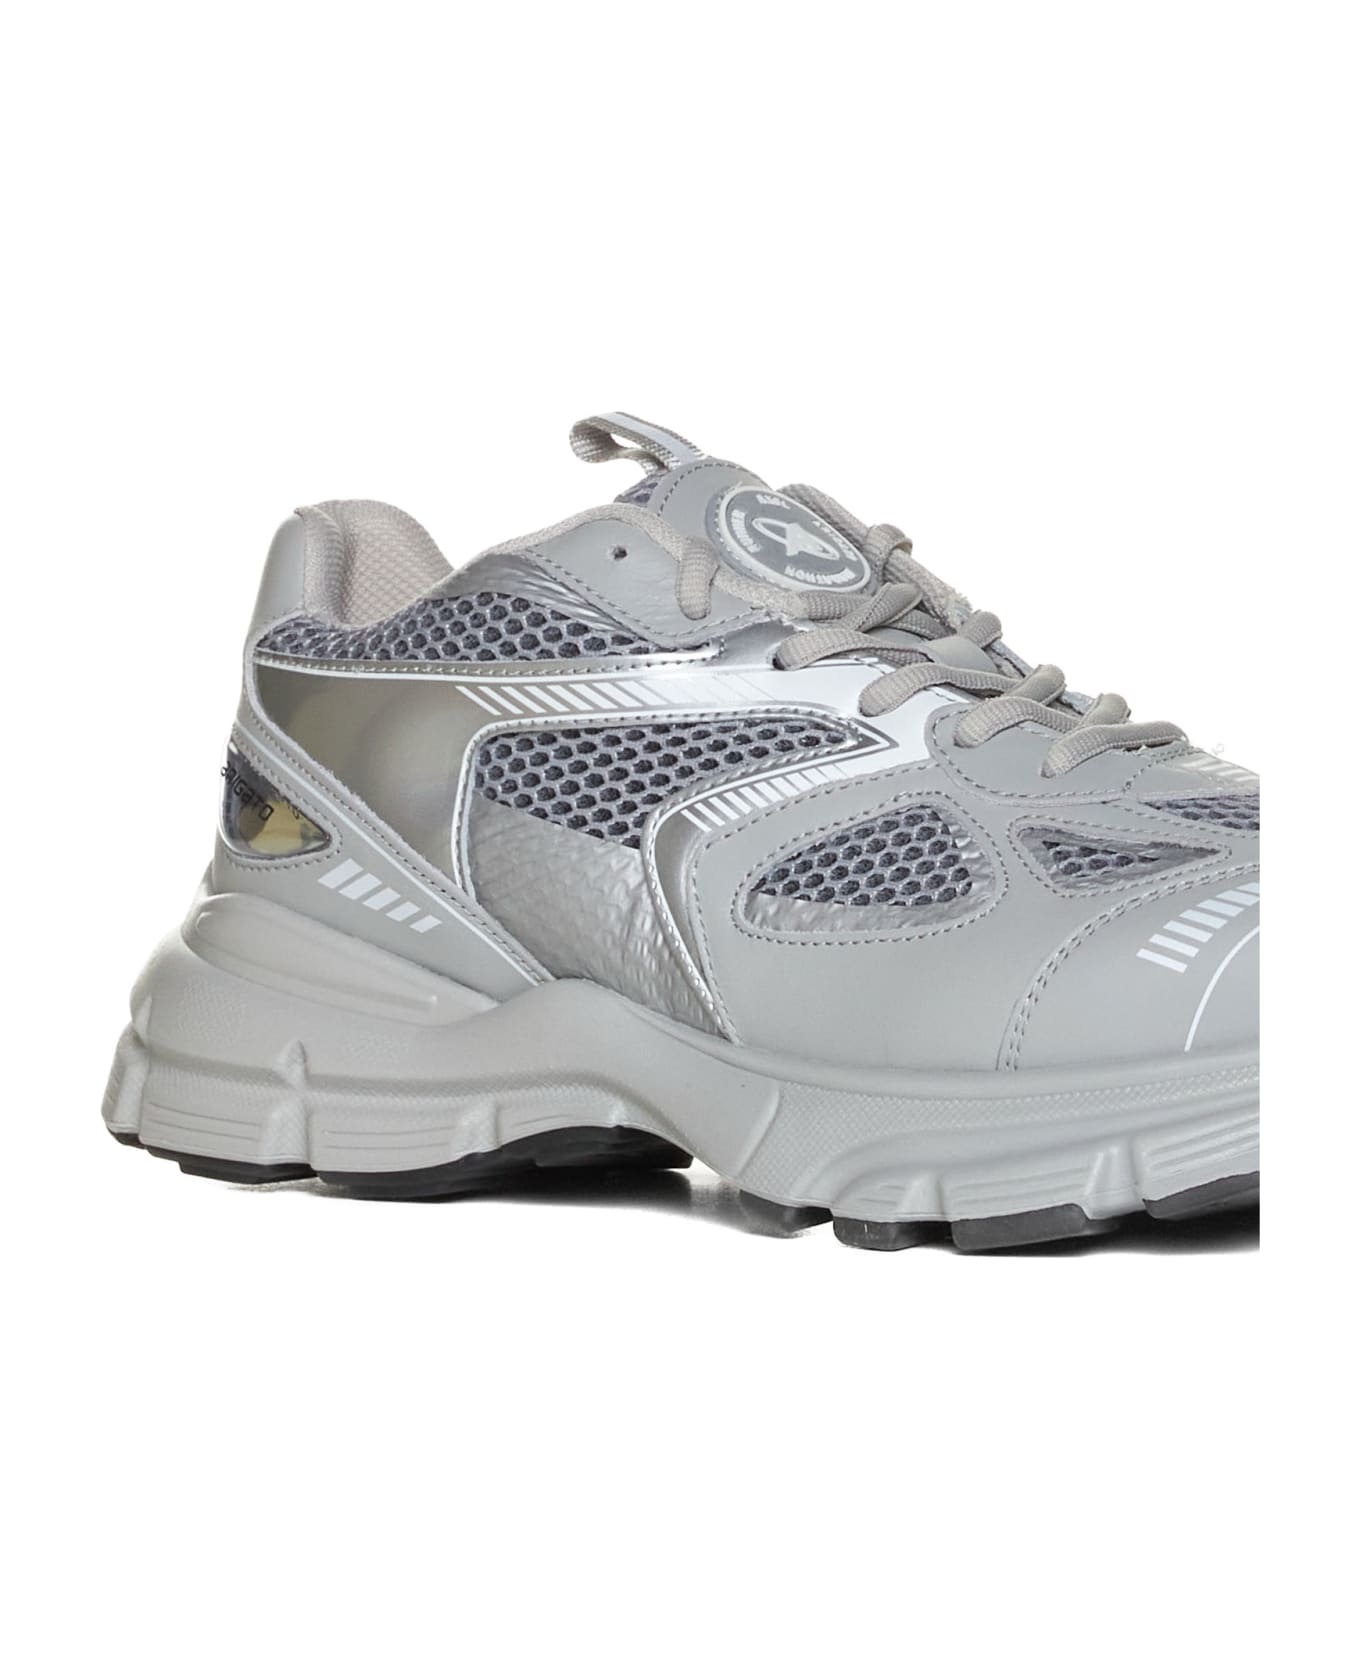 Axel Arigato Sneakers - Grey/silver